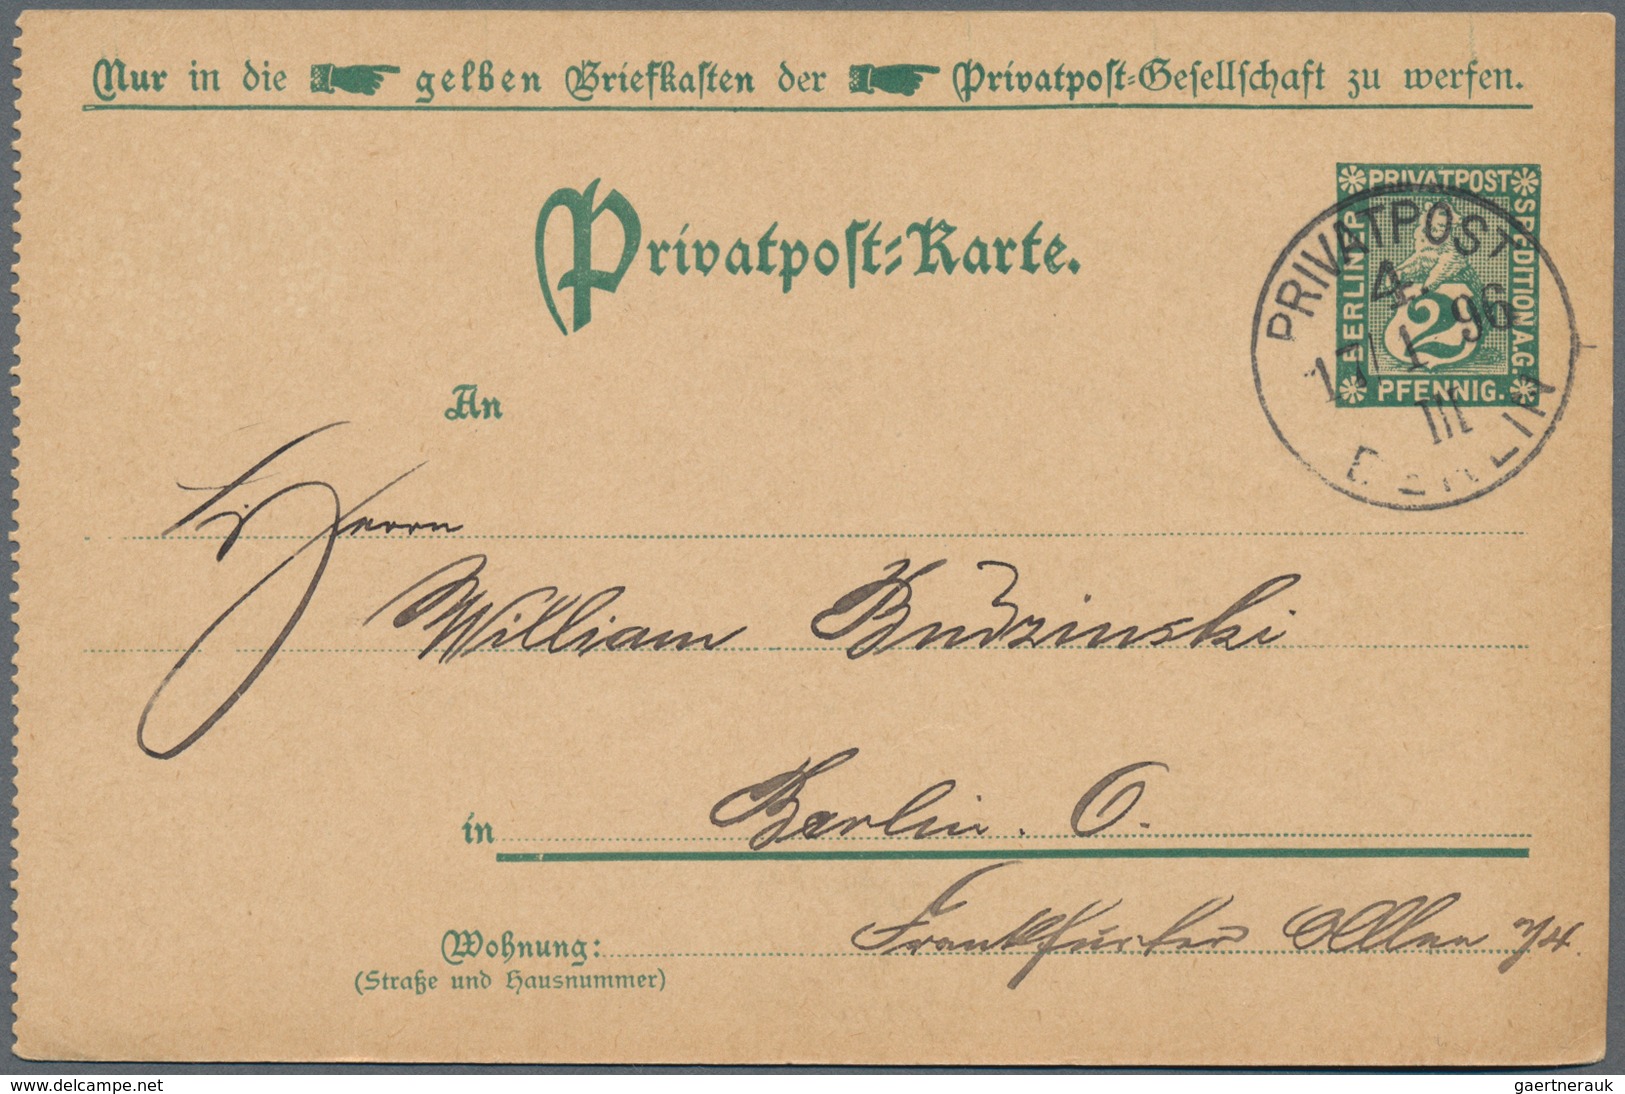 Deutsches Reich - Privatpost (Stadtpost): 1880-1900, Partie mit über 400 Ganzsachen, Briefen und Bel